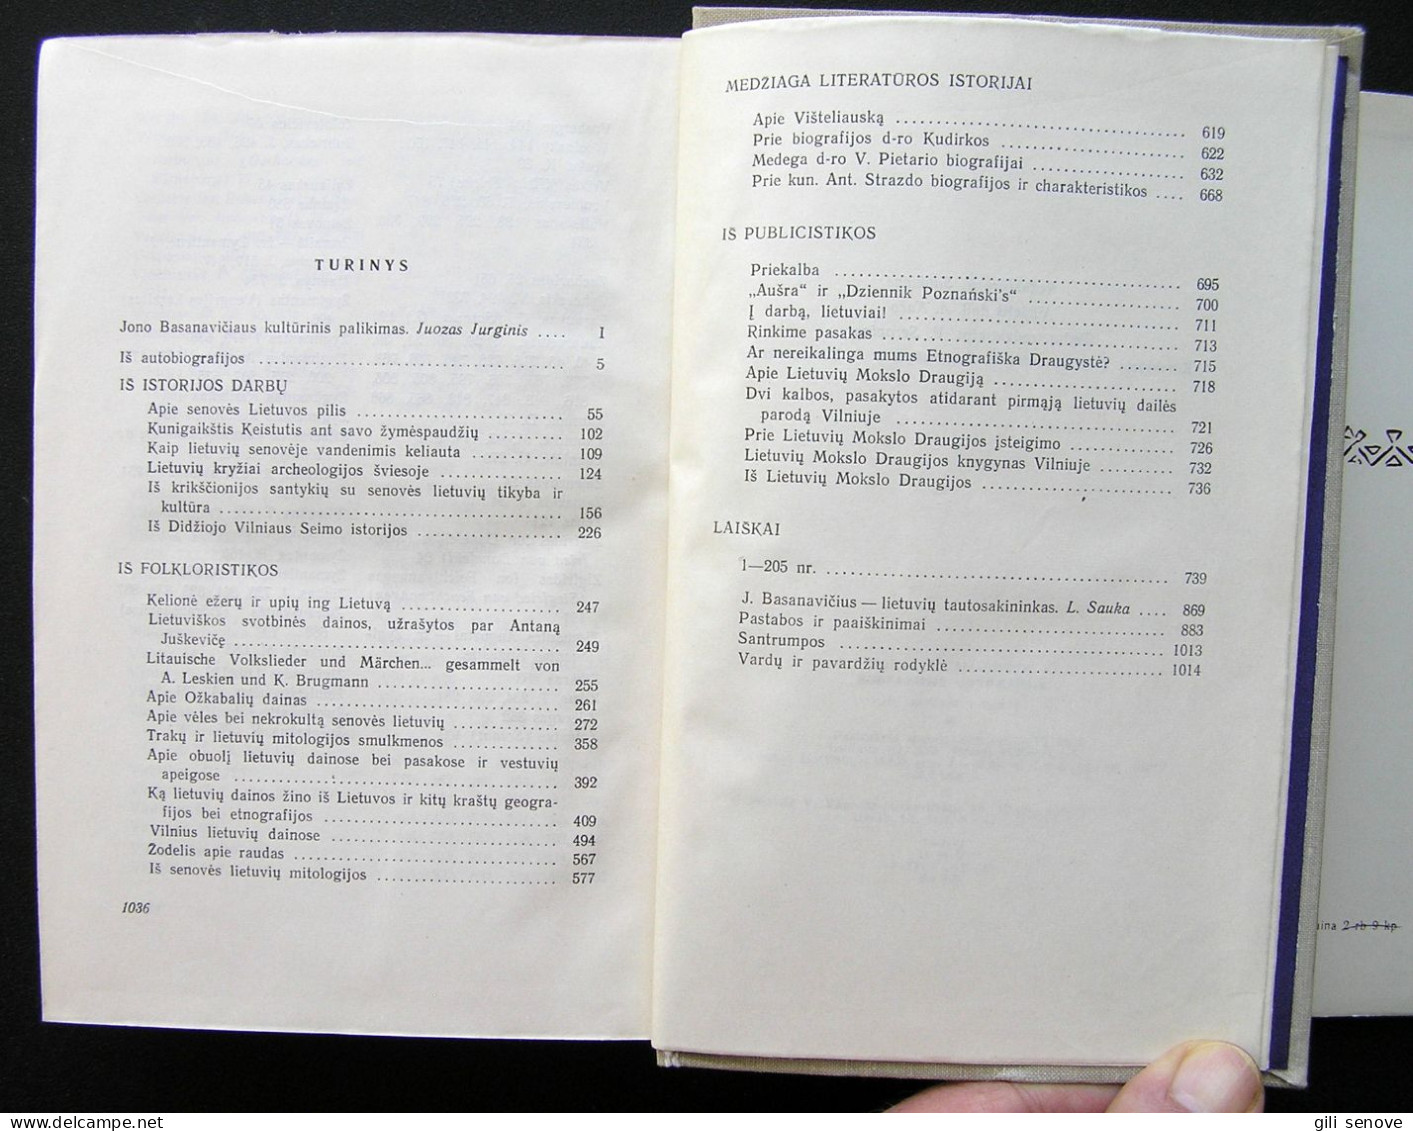 Lithuanian Book / Rinktiniai Raštai By Basanavičius 1970 - Kultur